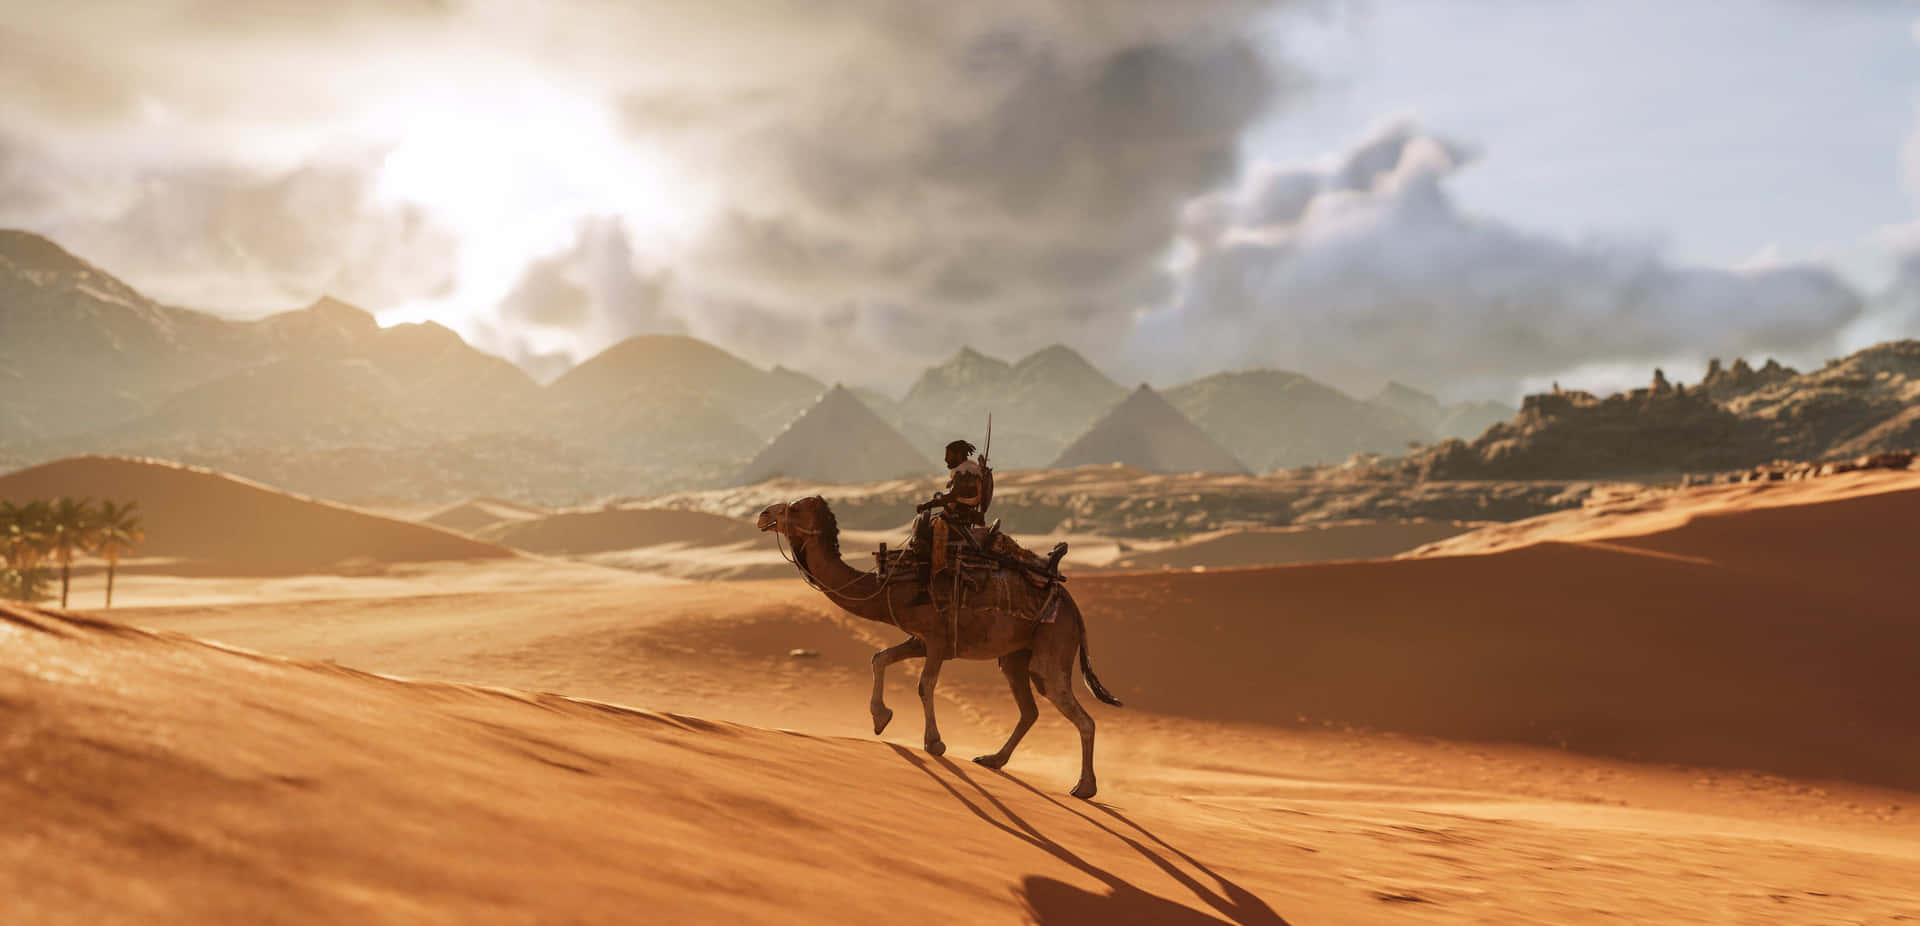 Ståendepå En Sanddyna, Majestätisk Kamel.